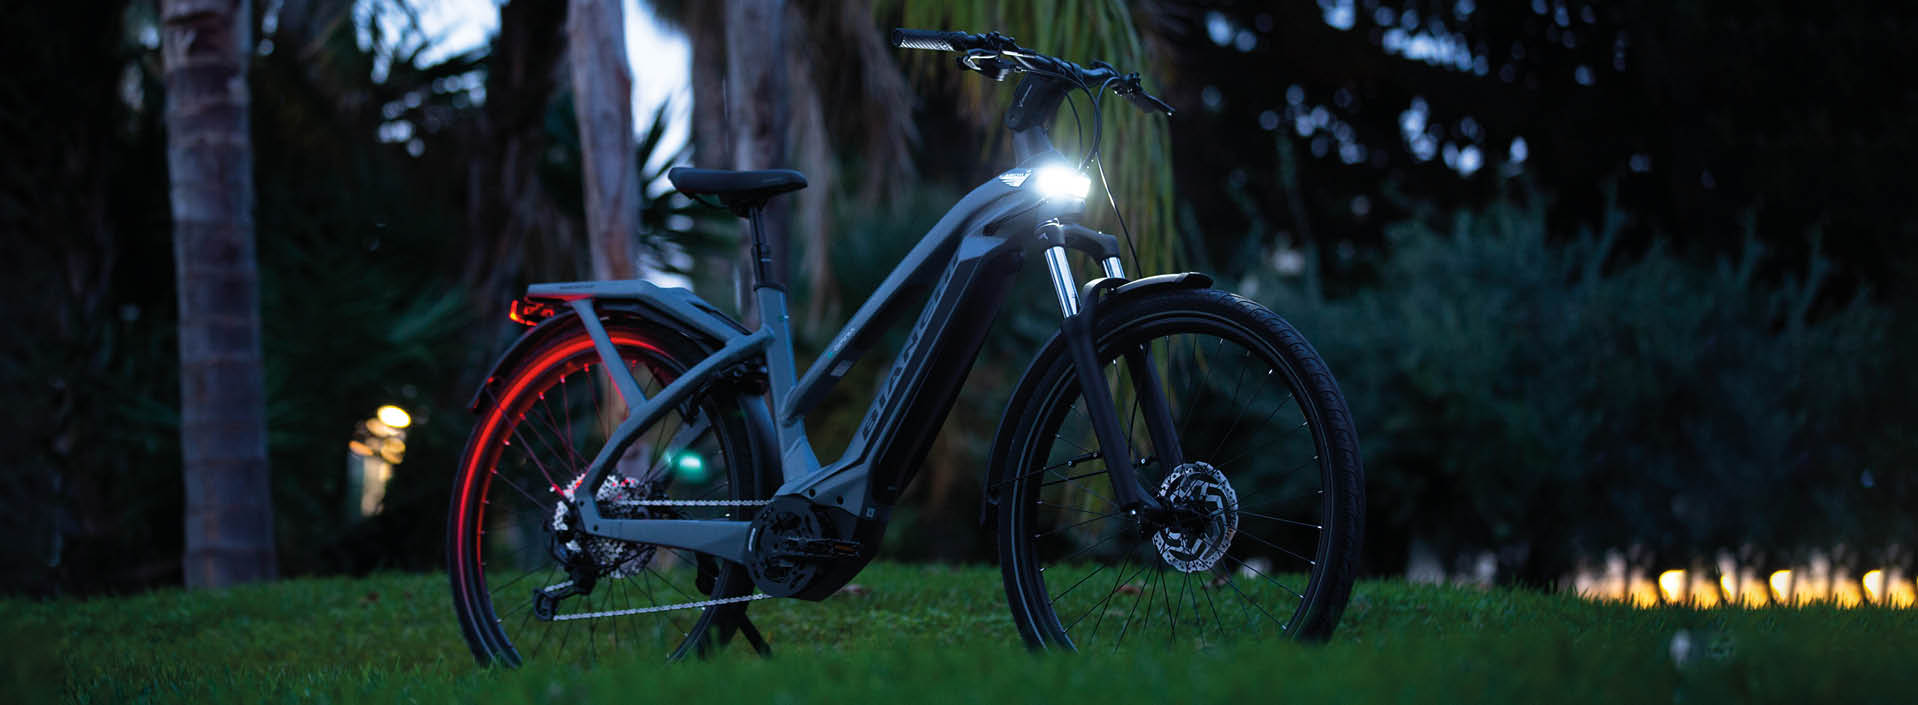 De verlichting op deze e-bike is een resultaat van de samenwerking tussen Bianchi en Spanninga